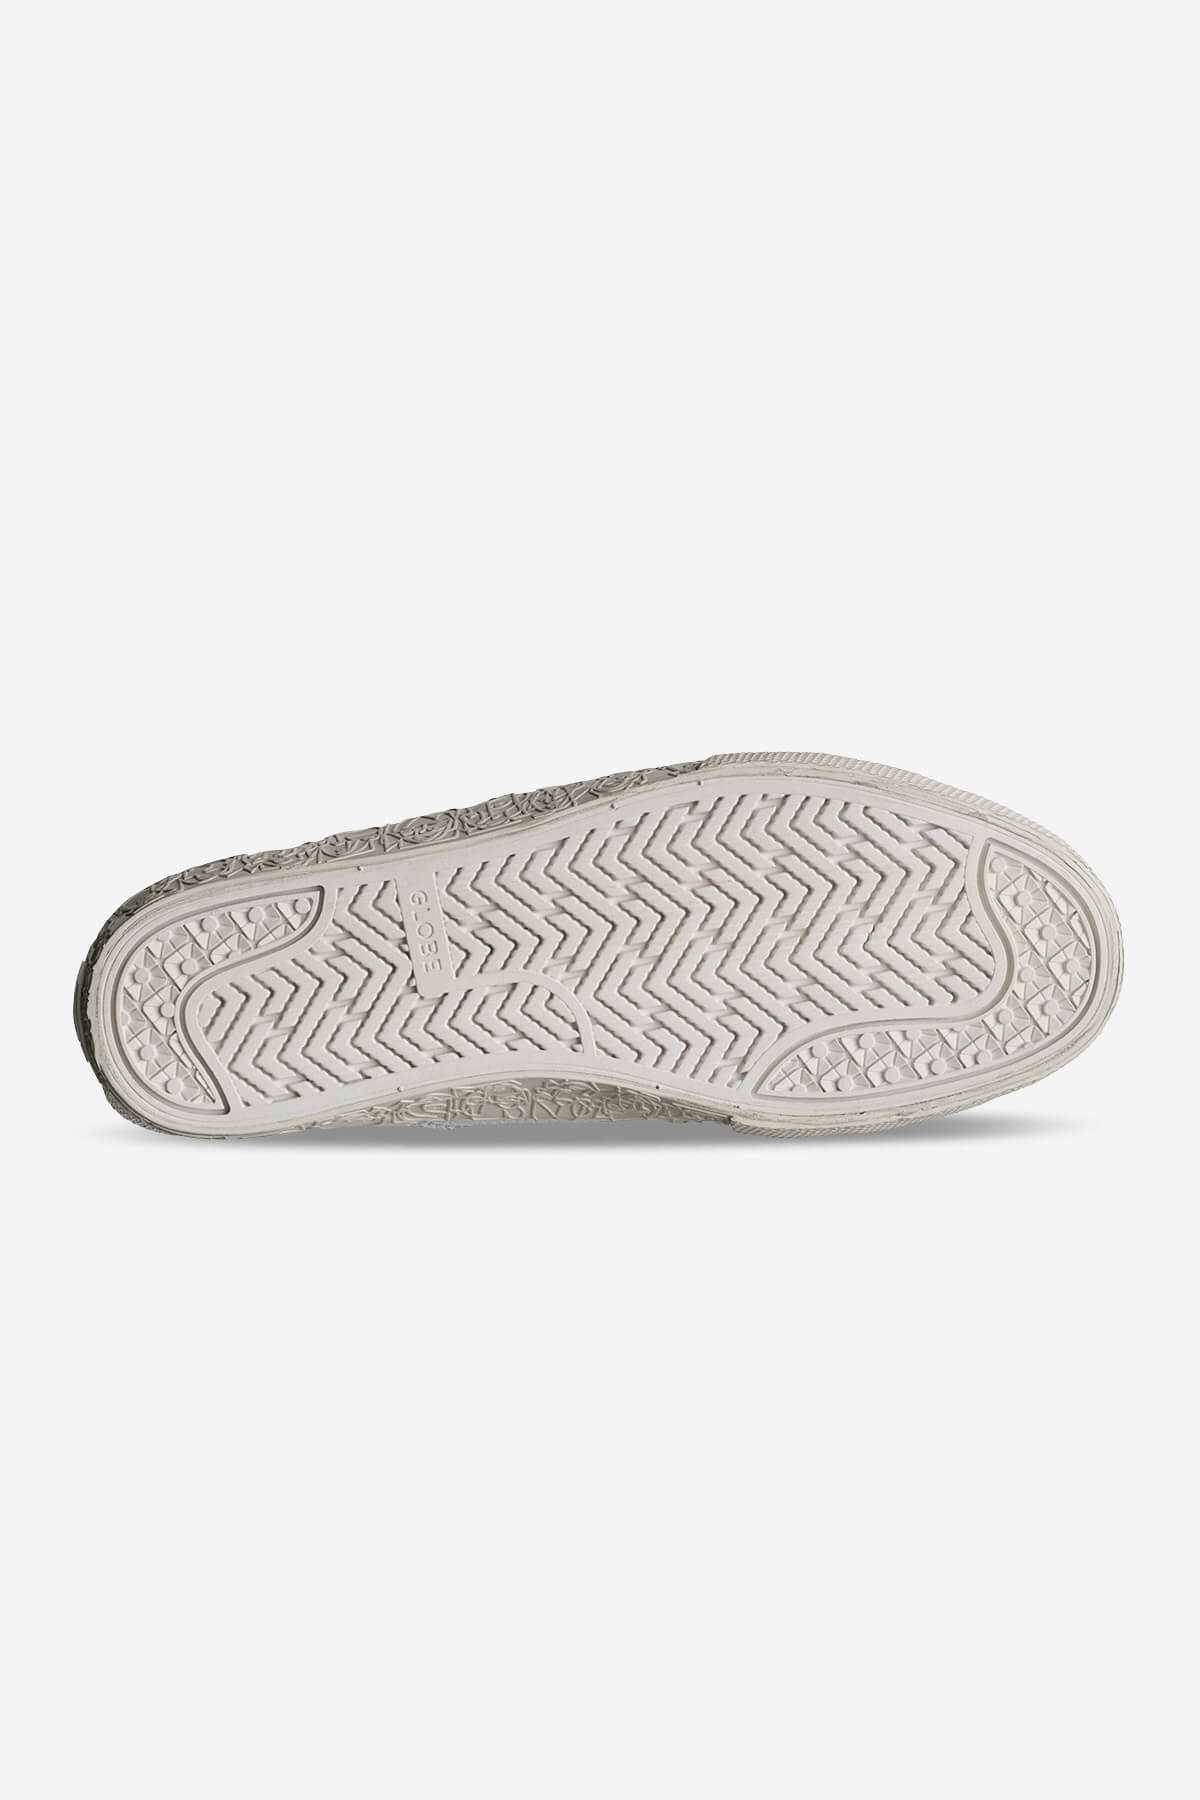 Globe - Surplus - White/Montano - skateboard Zapatos